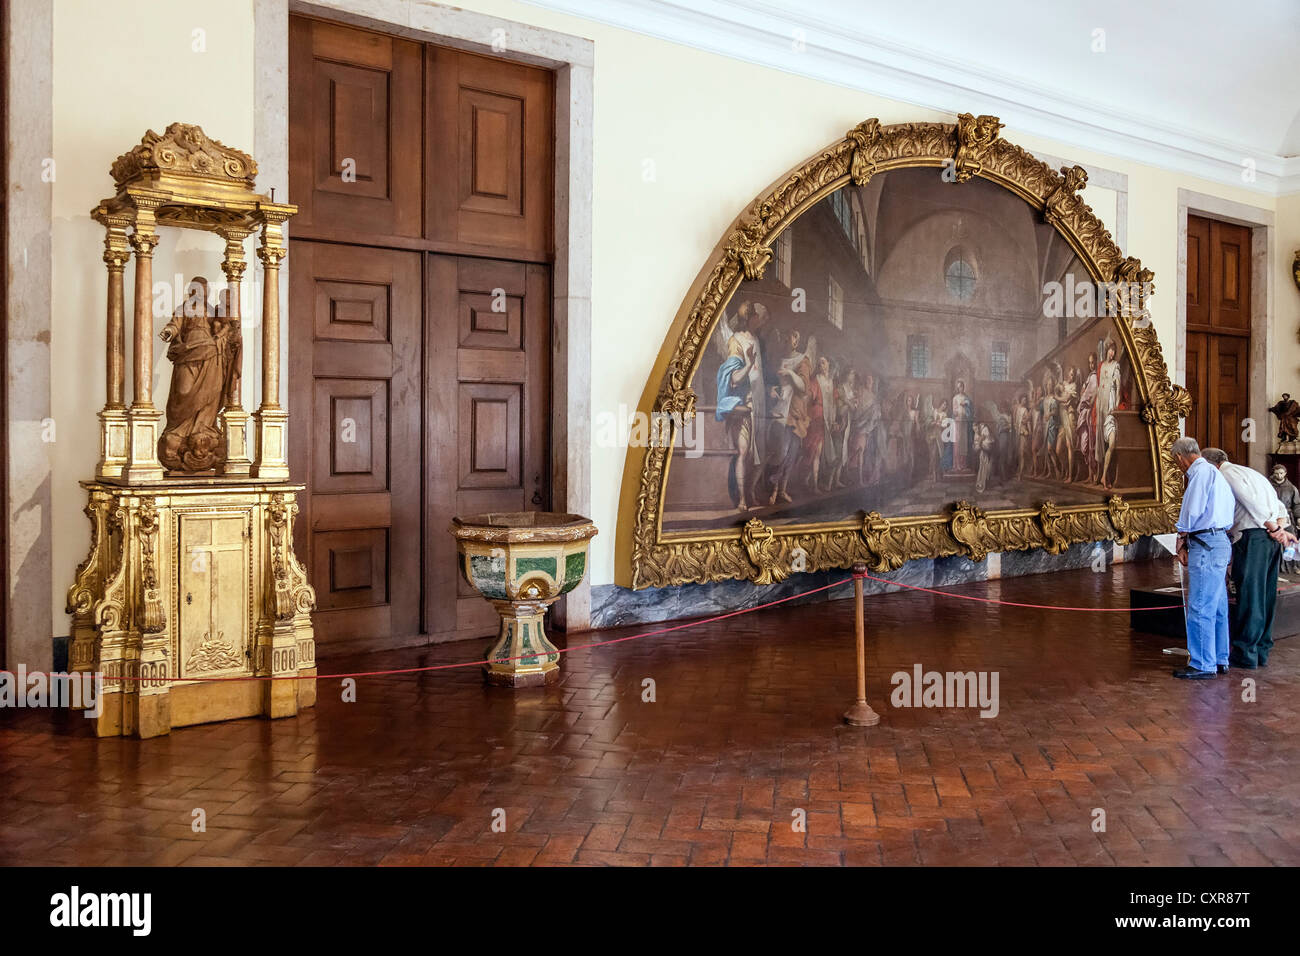 Sakrale Kunst Kern der Nationalpalast von Mafra. Portugal. Franziskaner Orden. 18. Jahrhundert Barock-Architektur. Stockfoto